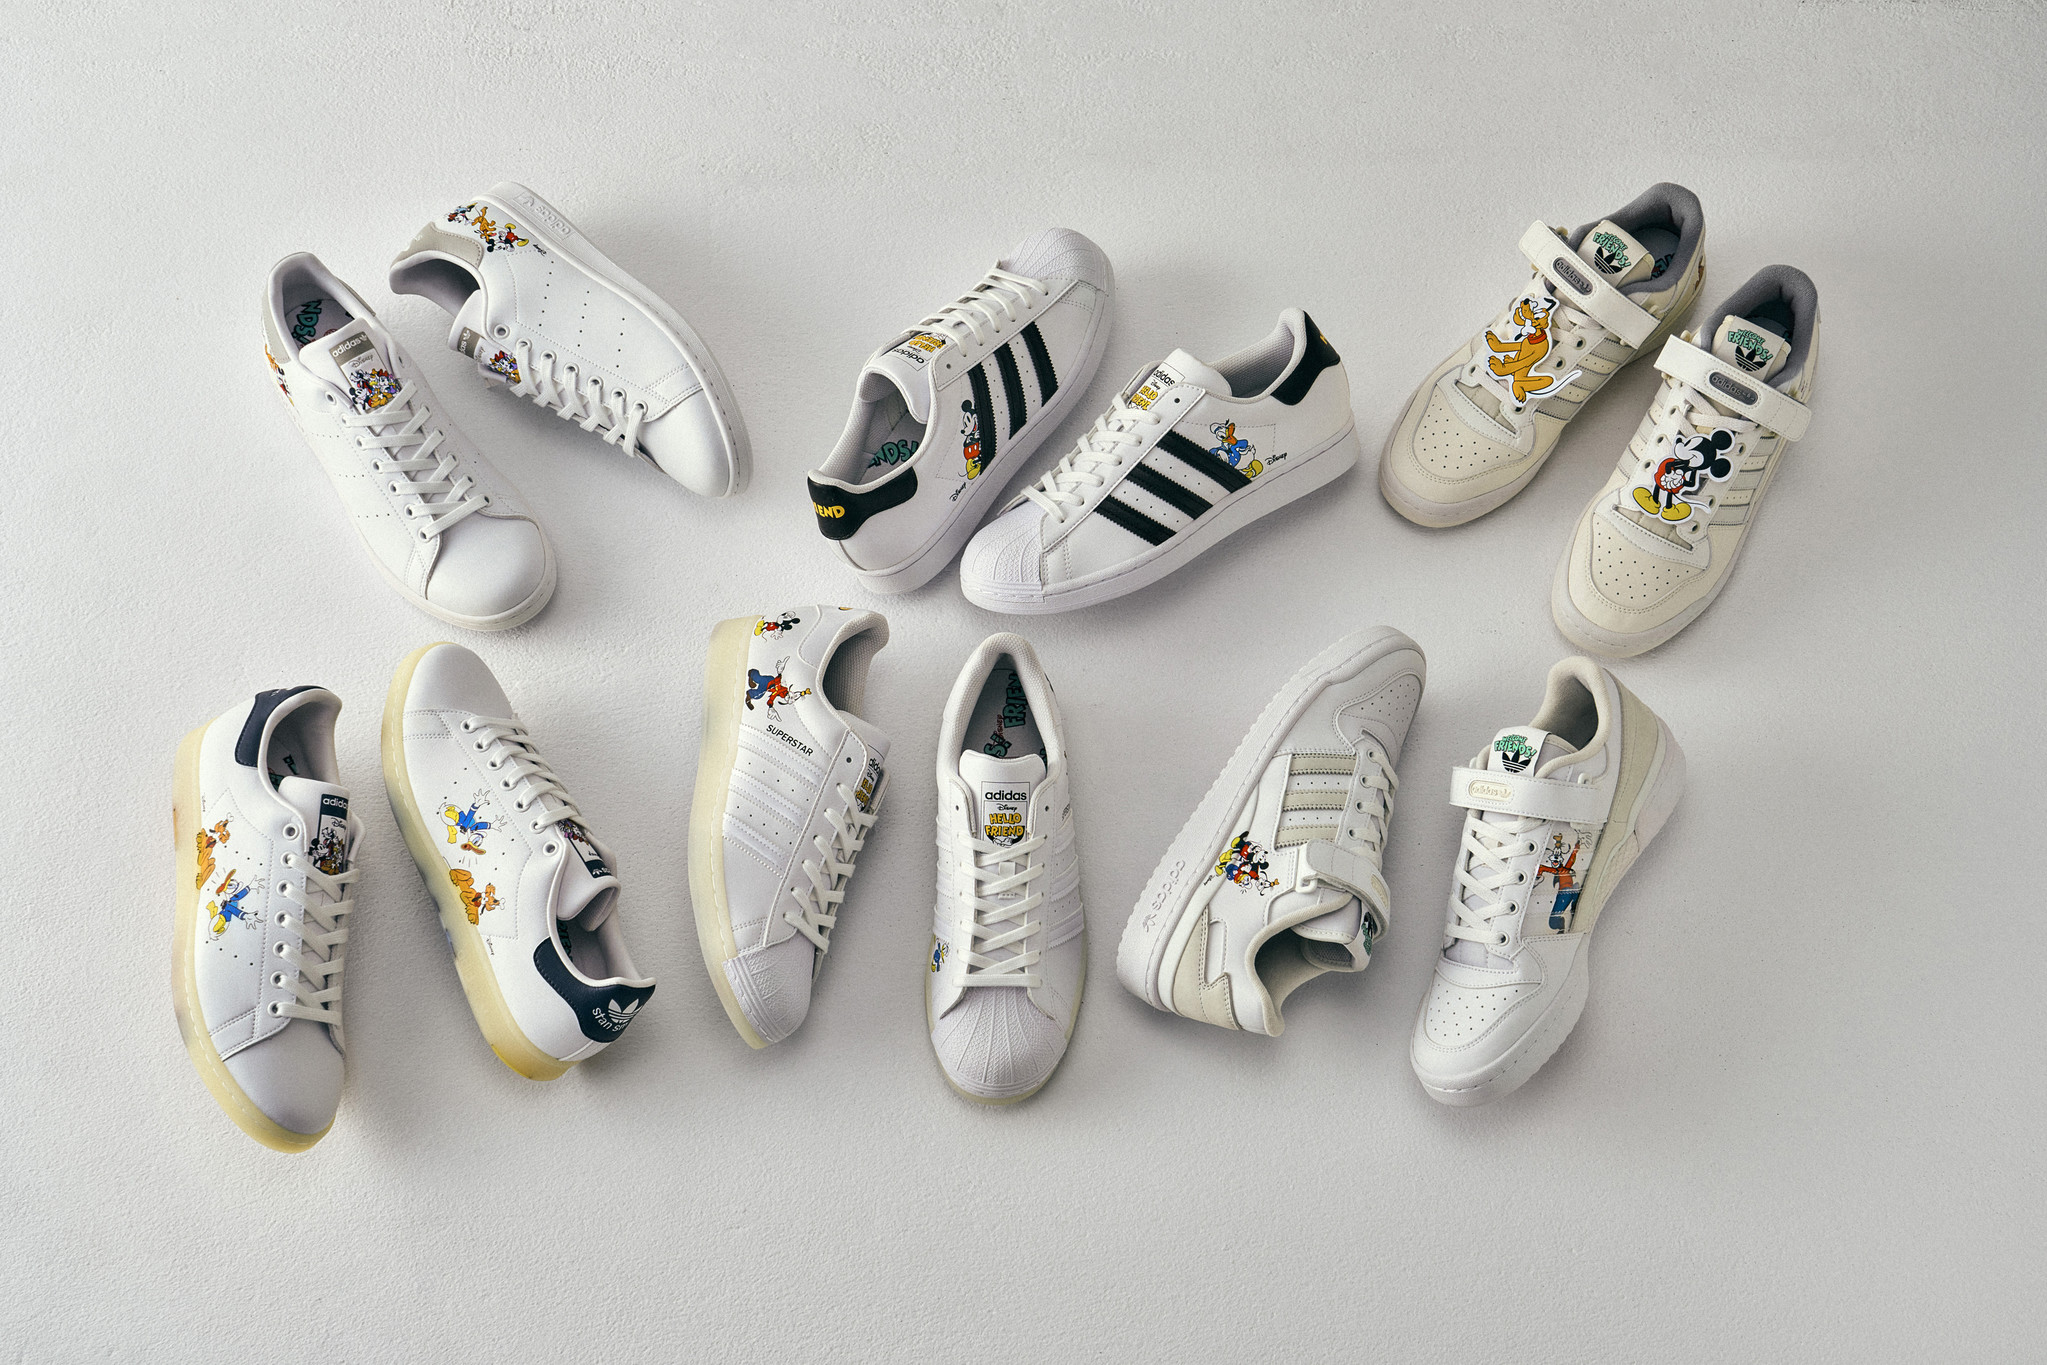 ミッキー フレンズが大集合 元気いっぱいなキャラクター達の遊び心溢れるコレクション Adidas Originals の ディズニー 新作コレクションがabc Mart限定発売 株式会社エービーシー マートのプレスリリース